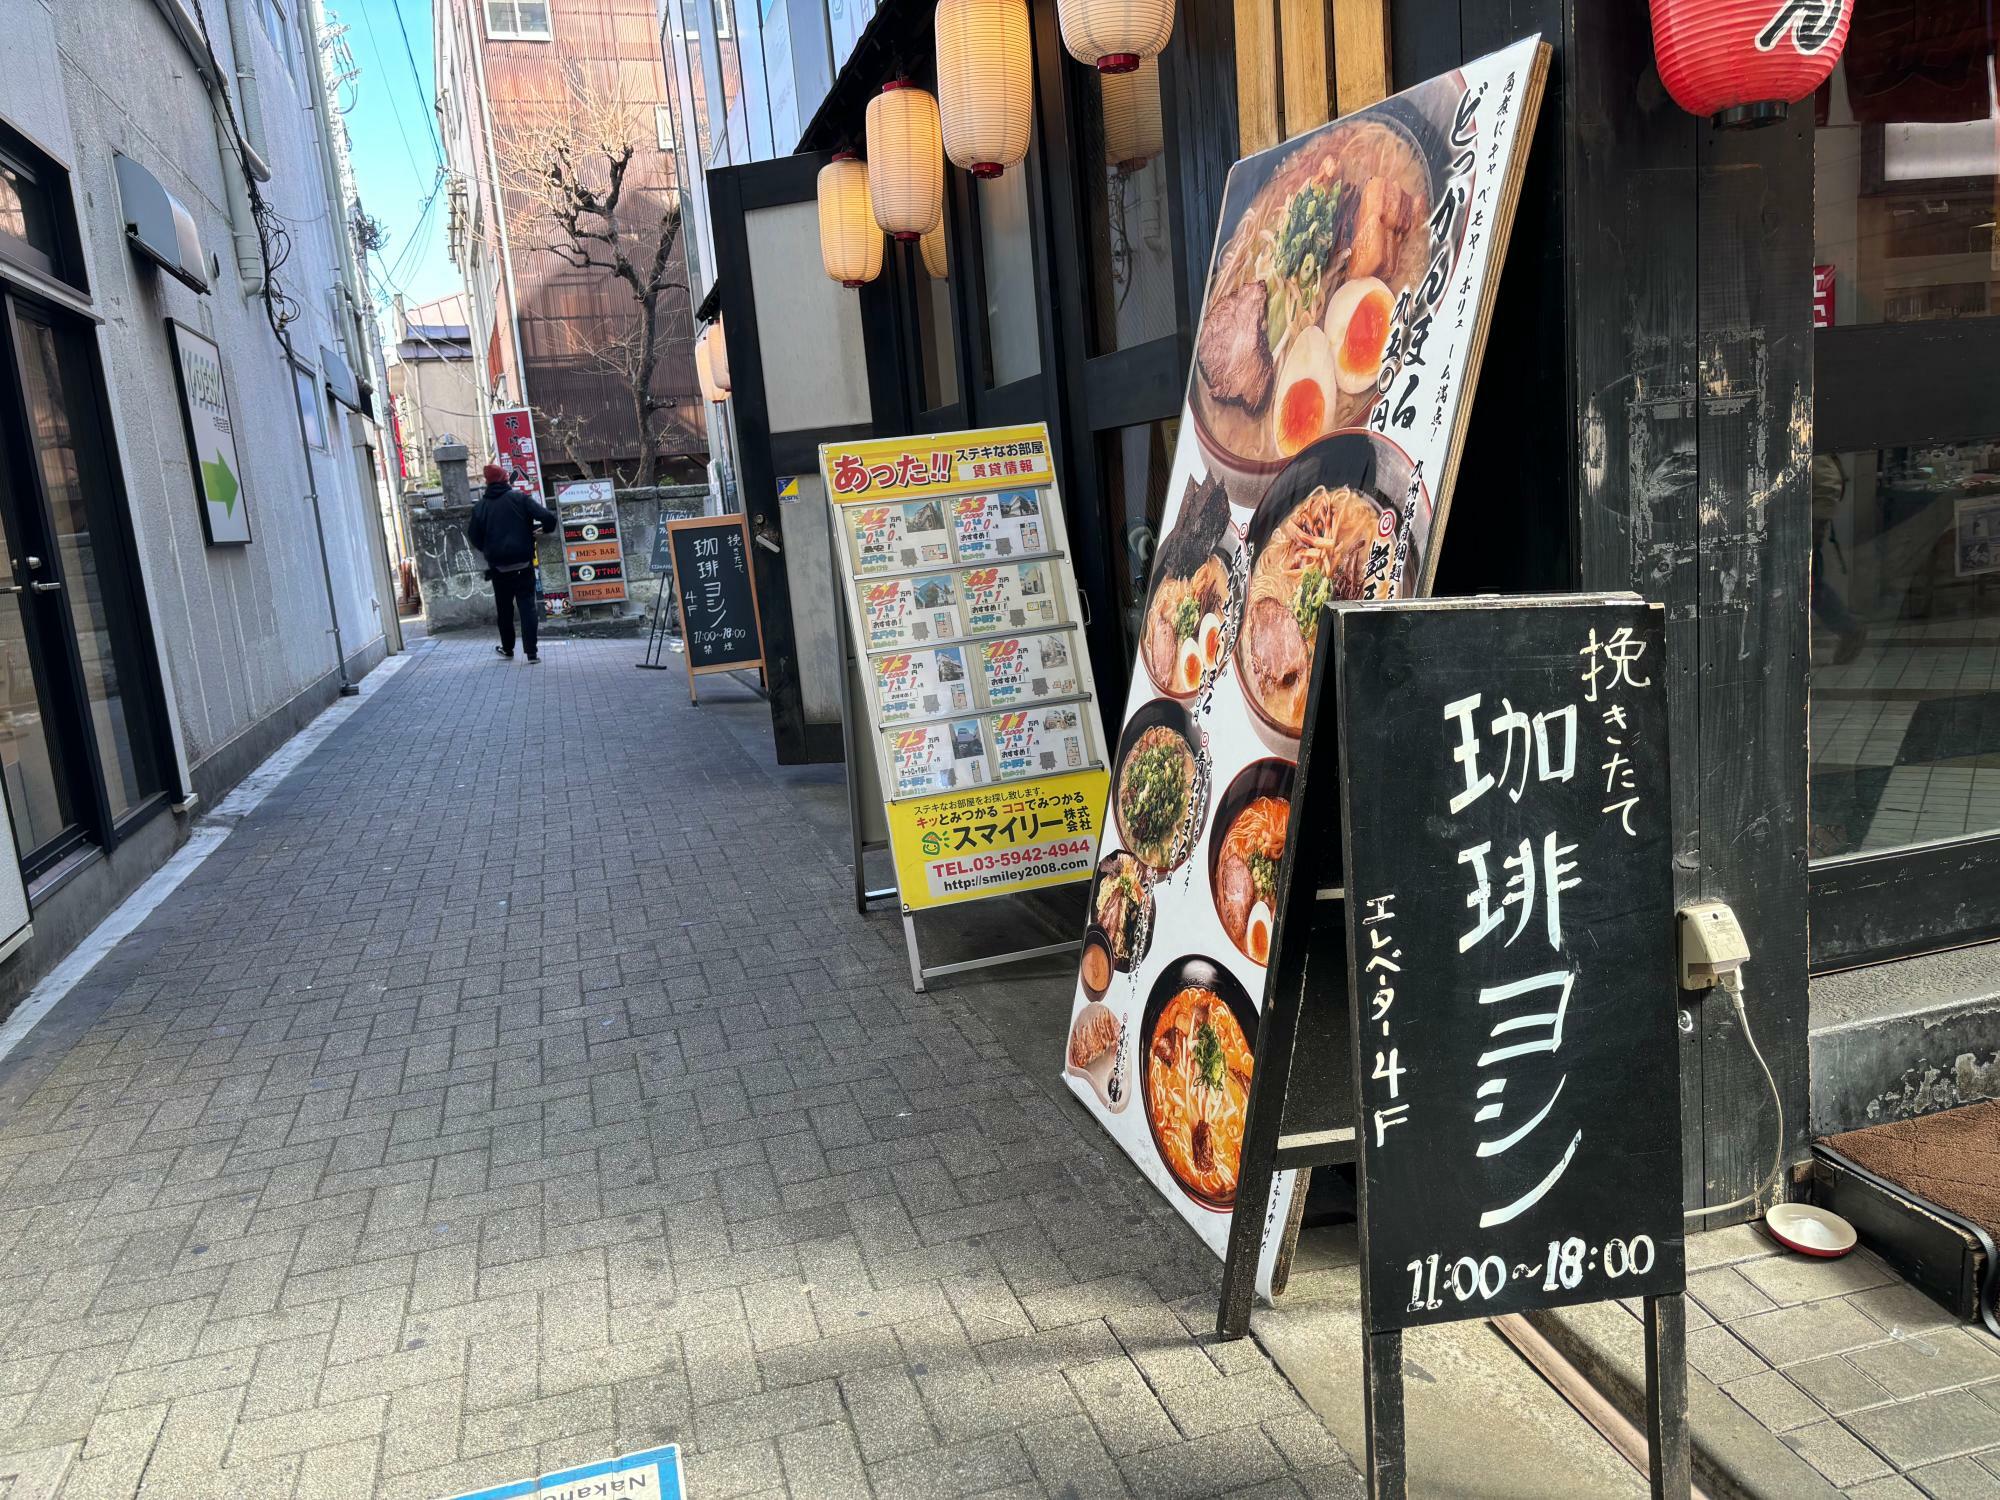 中野駅北口をでて中野サンモール通りを歩くと右に見える看板が目印